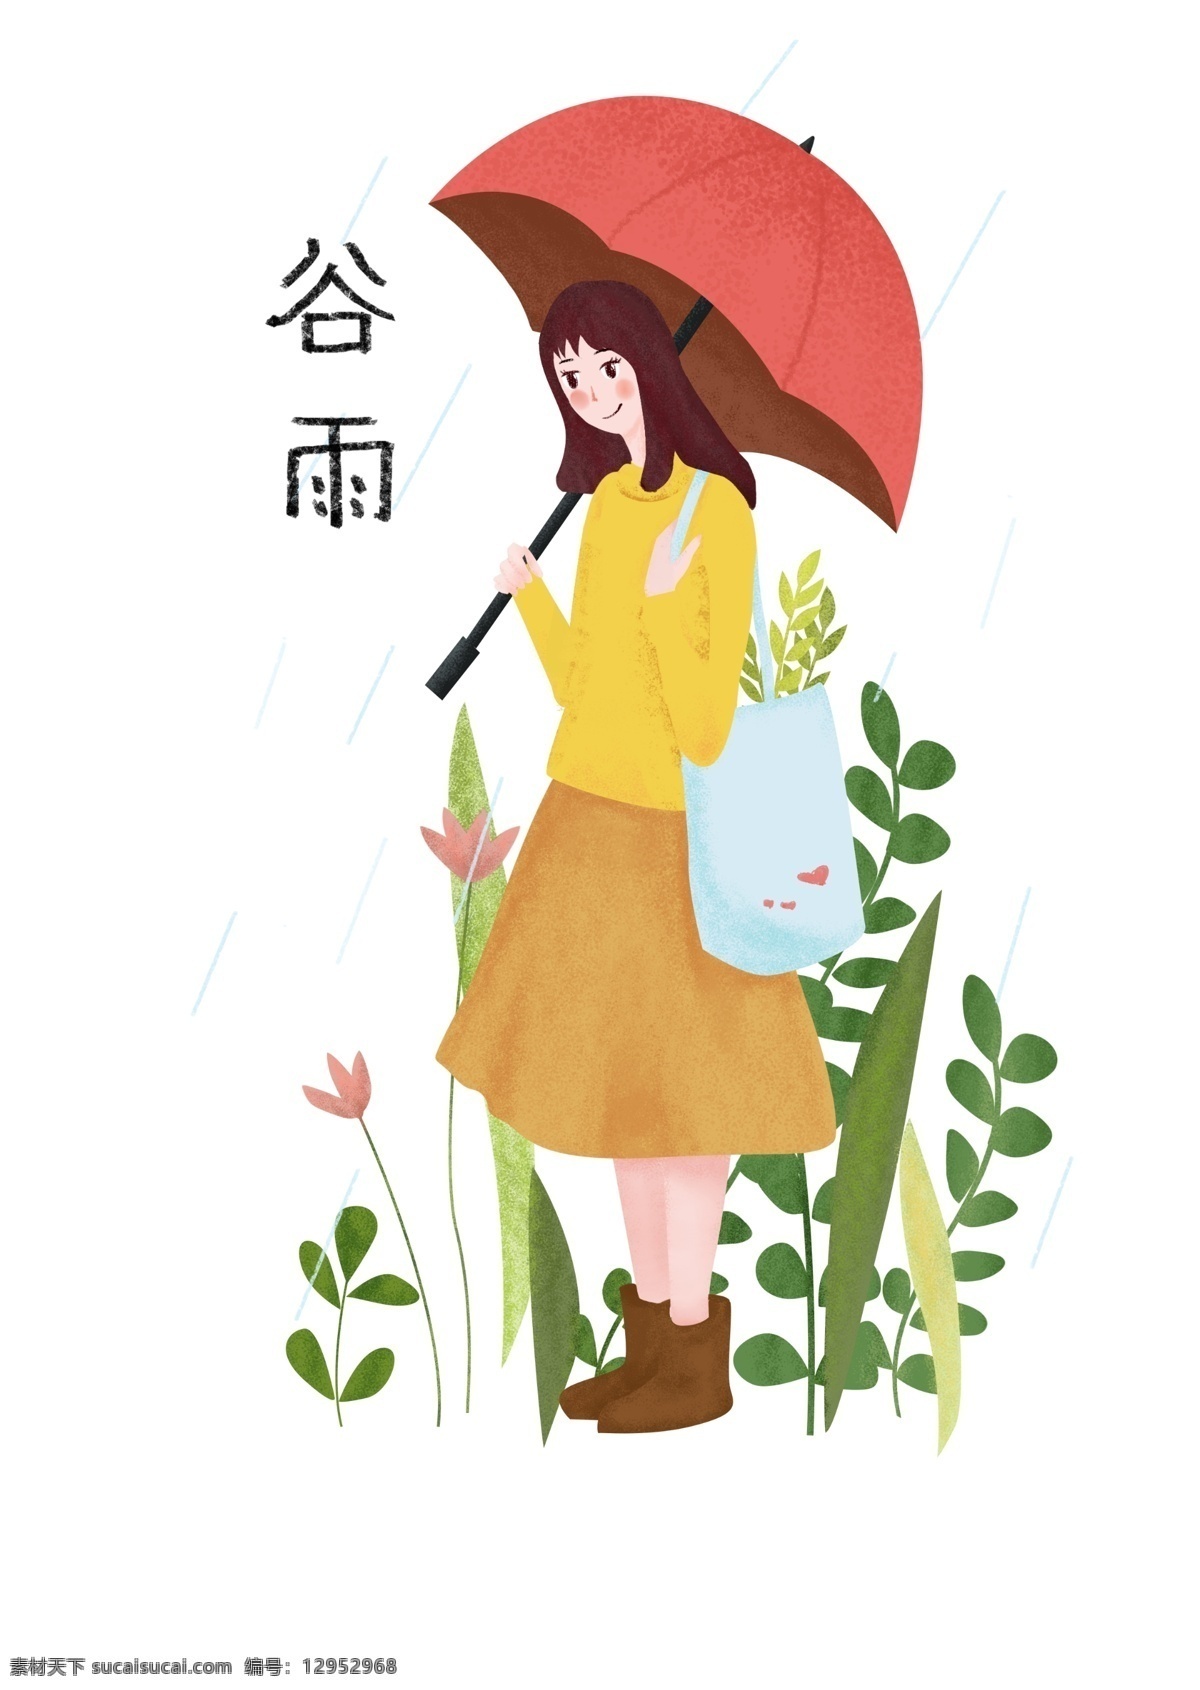 谷雨 节气 雨伞 女孩 插画 红色的雨伞 卡通插画 谷雨节气 谷雨插画 下雨天气 二十四节气 绿色的叶子